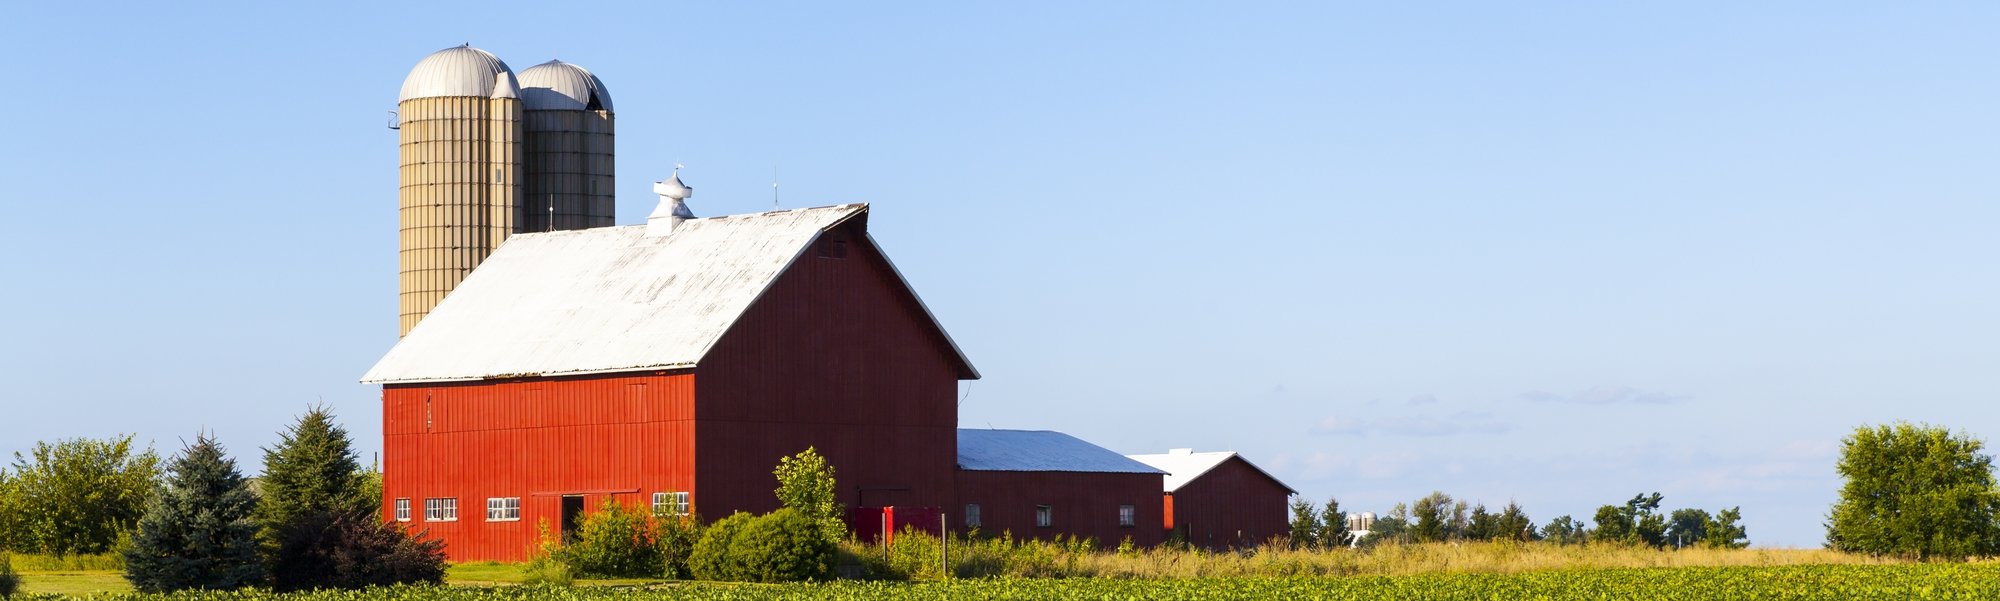 banner-farm